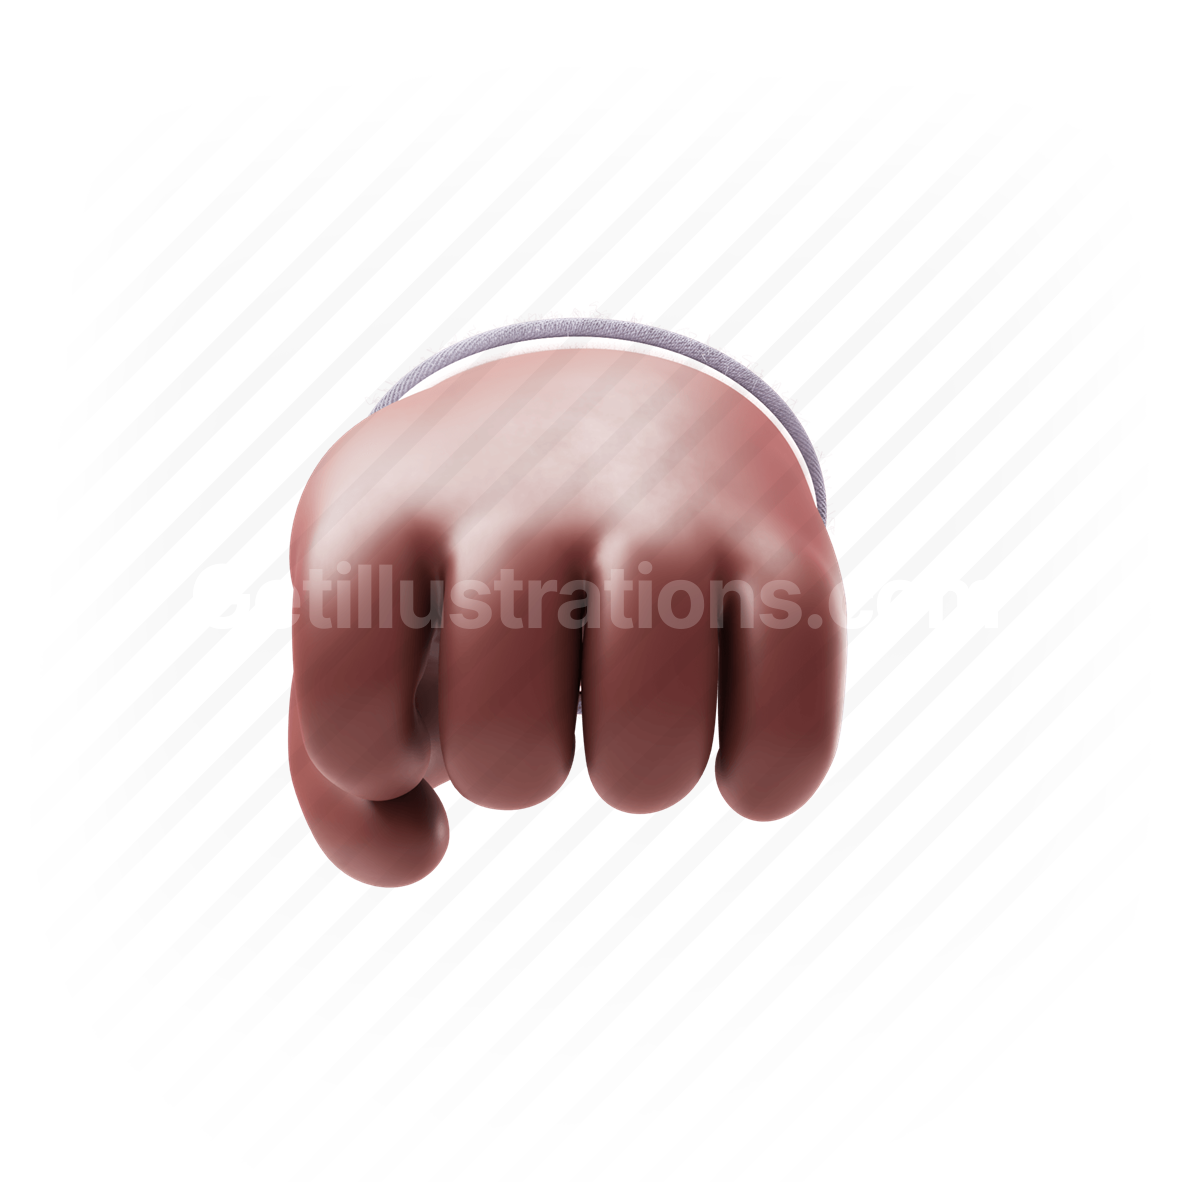 hand gestures, hand, gesture, emoticon, emoji,  finger, fingers, fist, fist bump, greeting, suit, dark